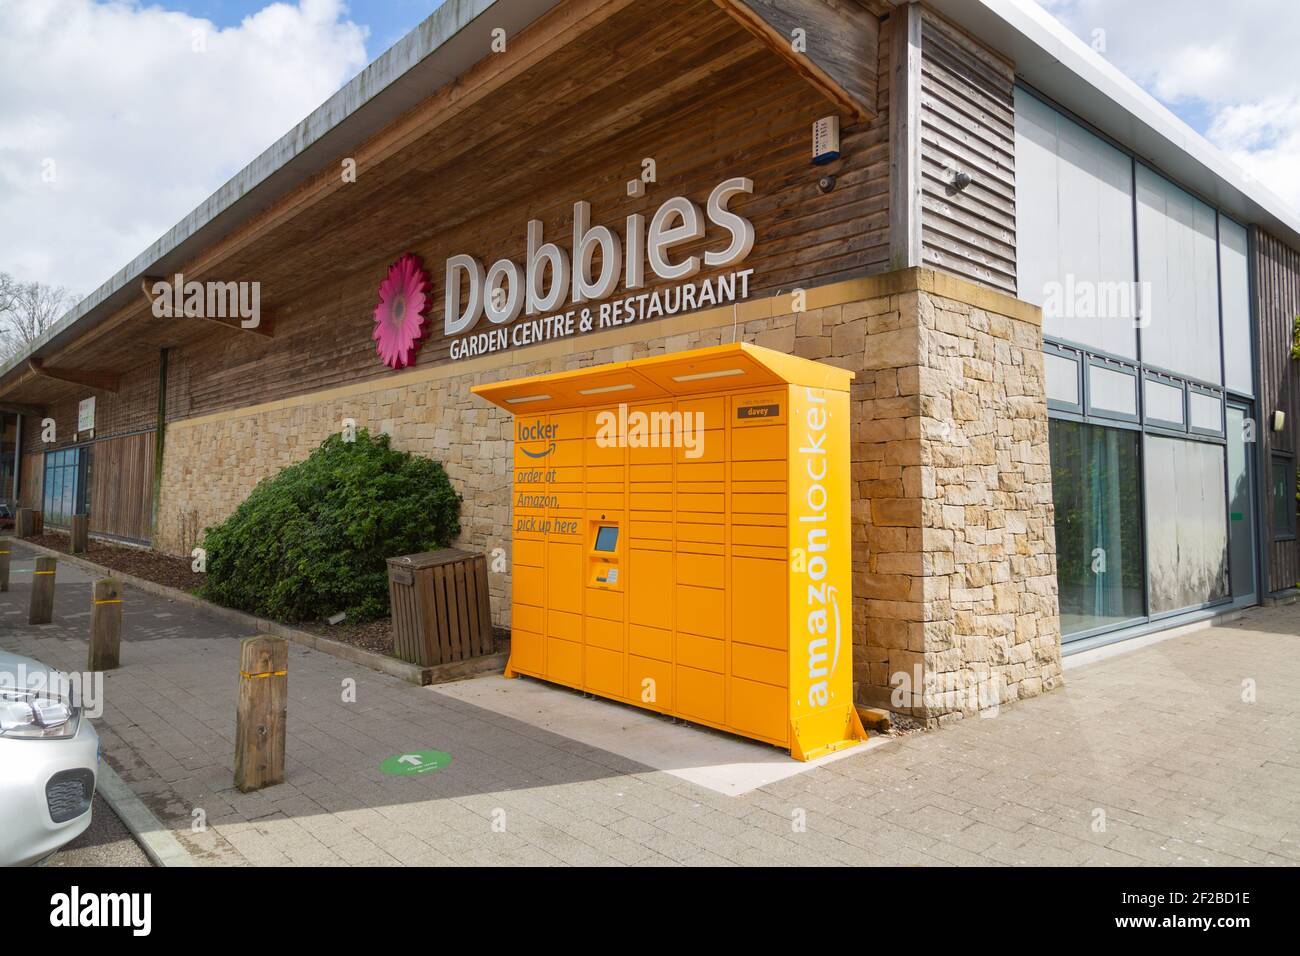 Dobbies Stockfotos und -bilder Kaufen - Alamy